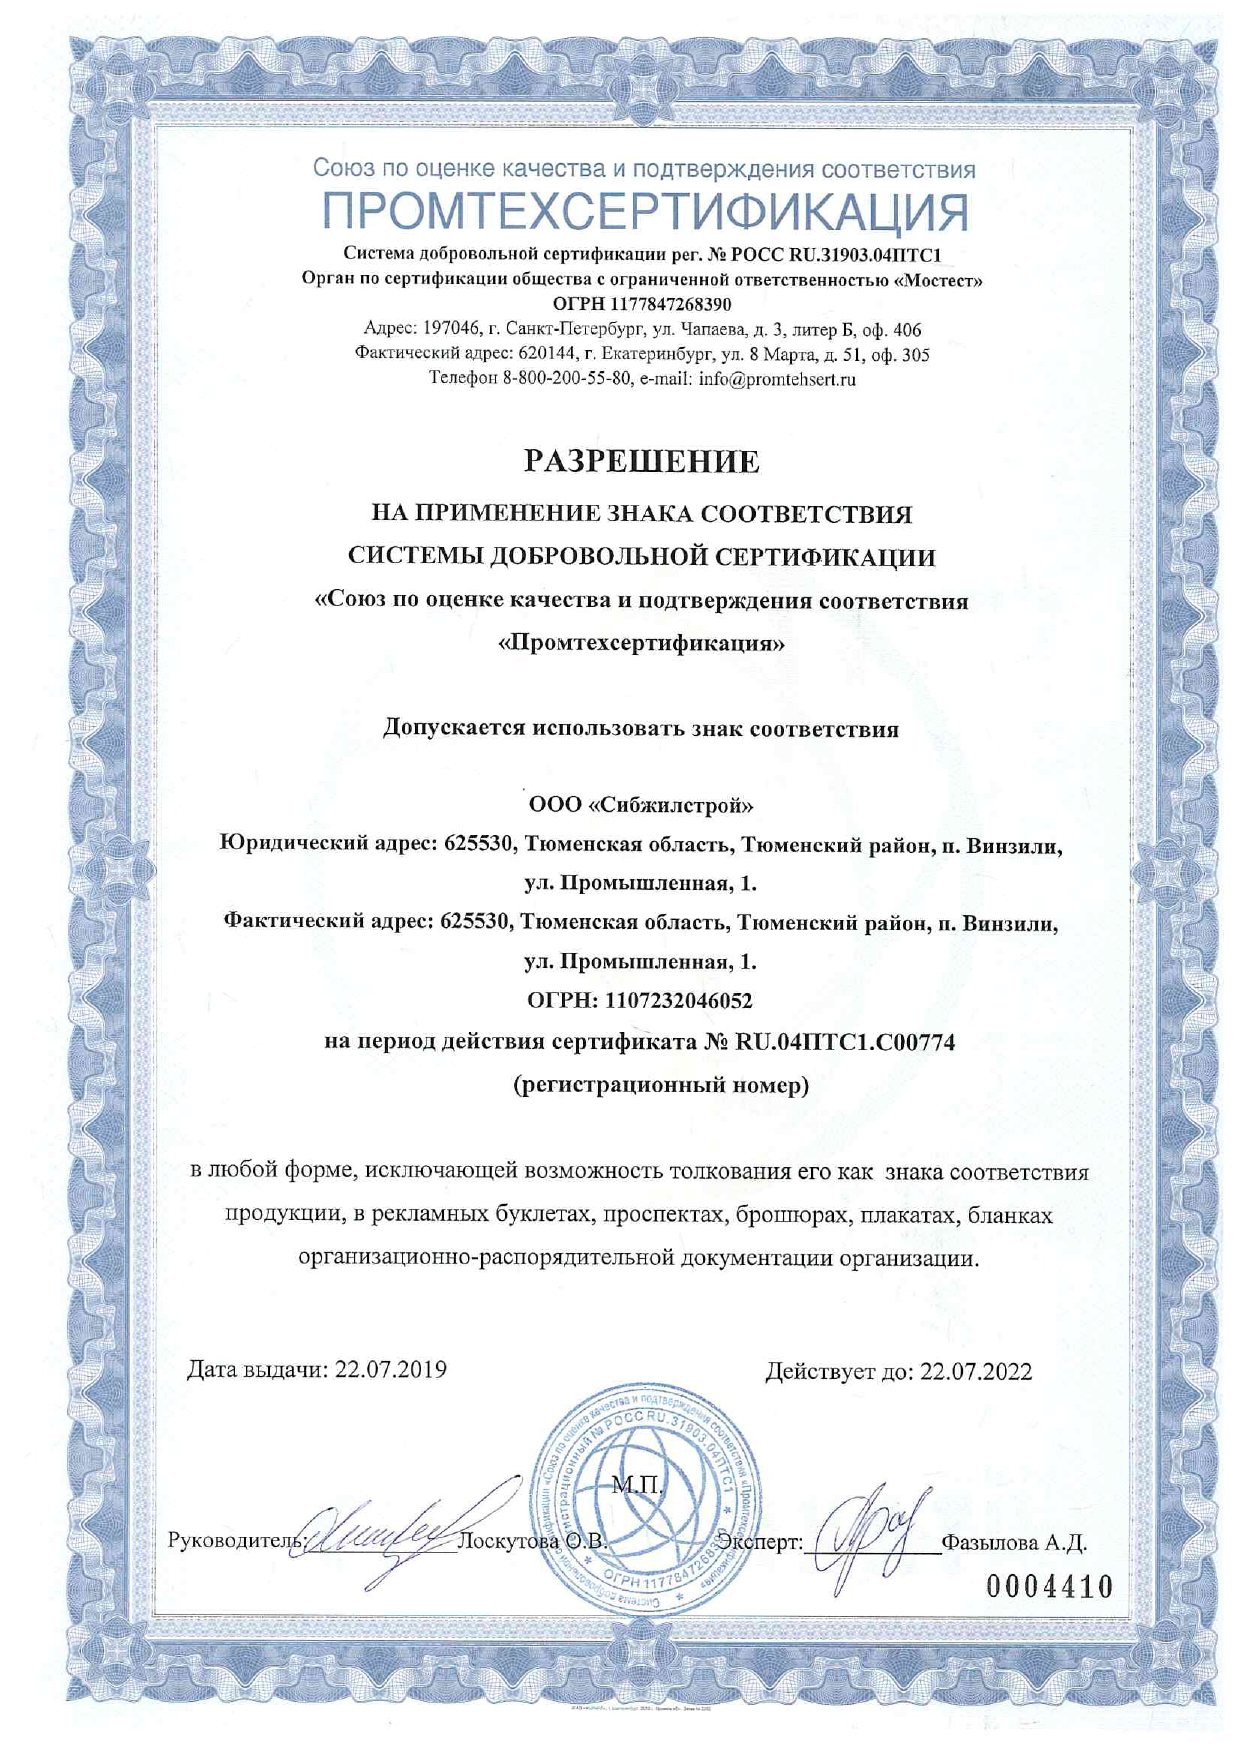 Сертификат соответствия аудитора ГОСТ Р ИСО 9001-2015 и Разрешение на применение знака соответствия